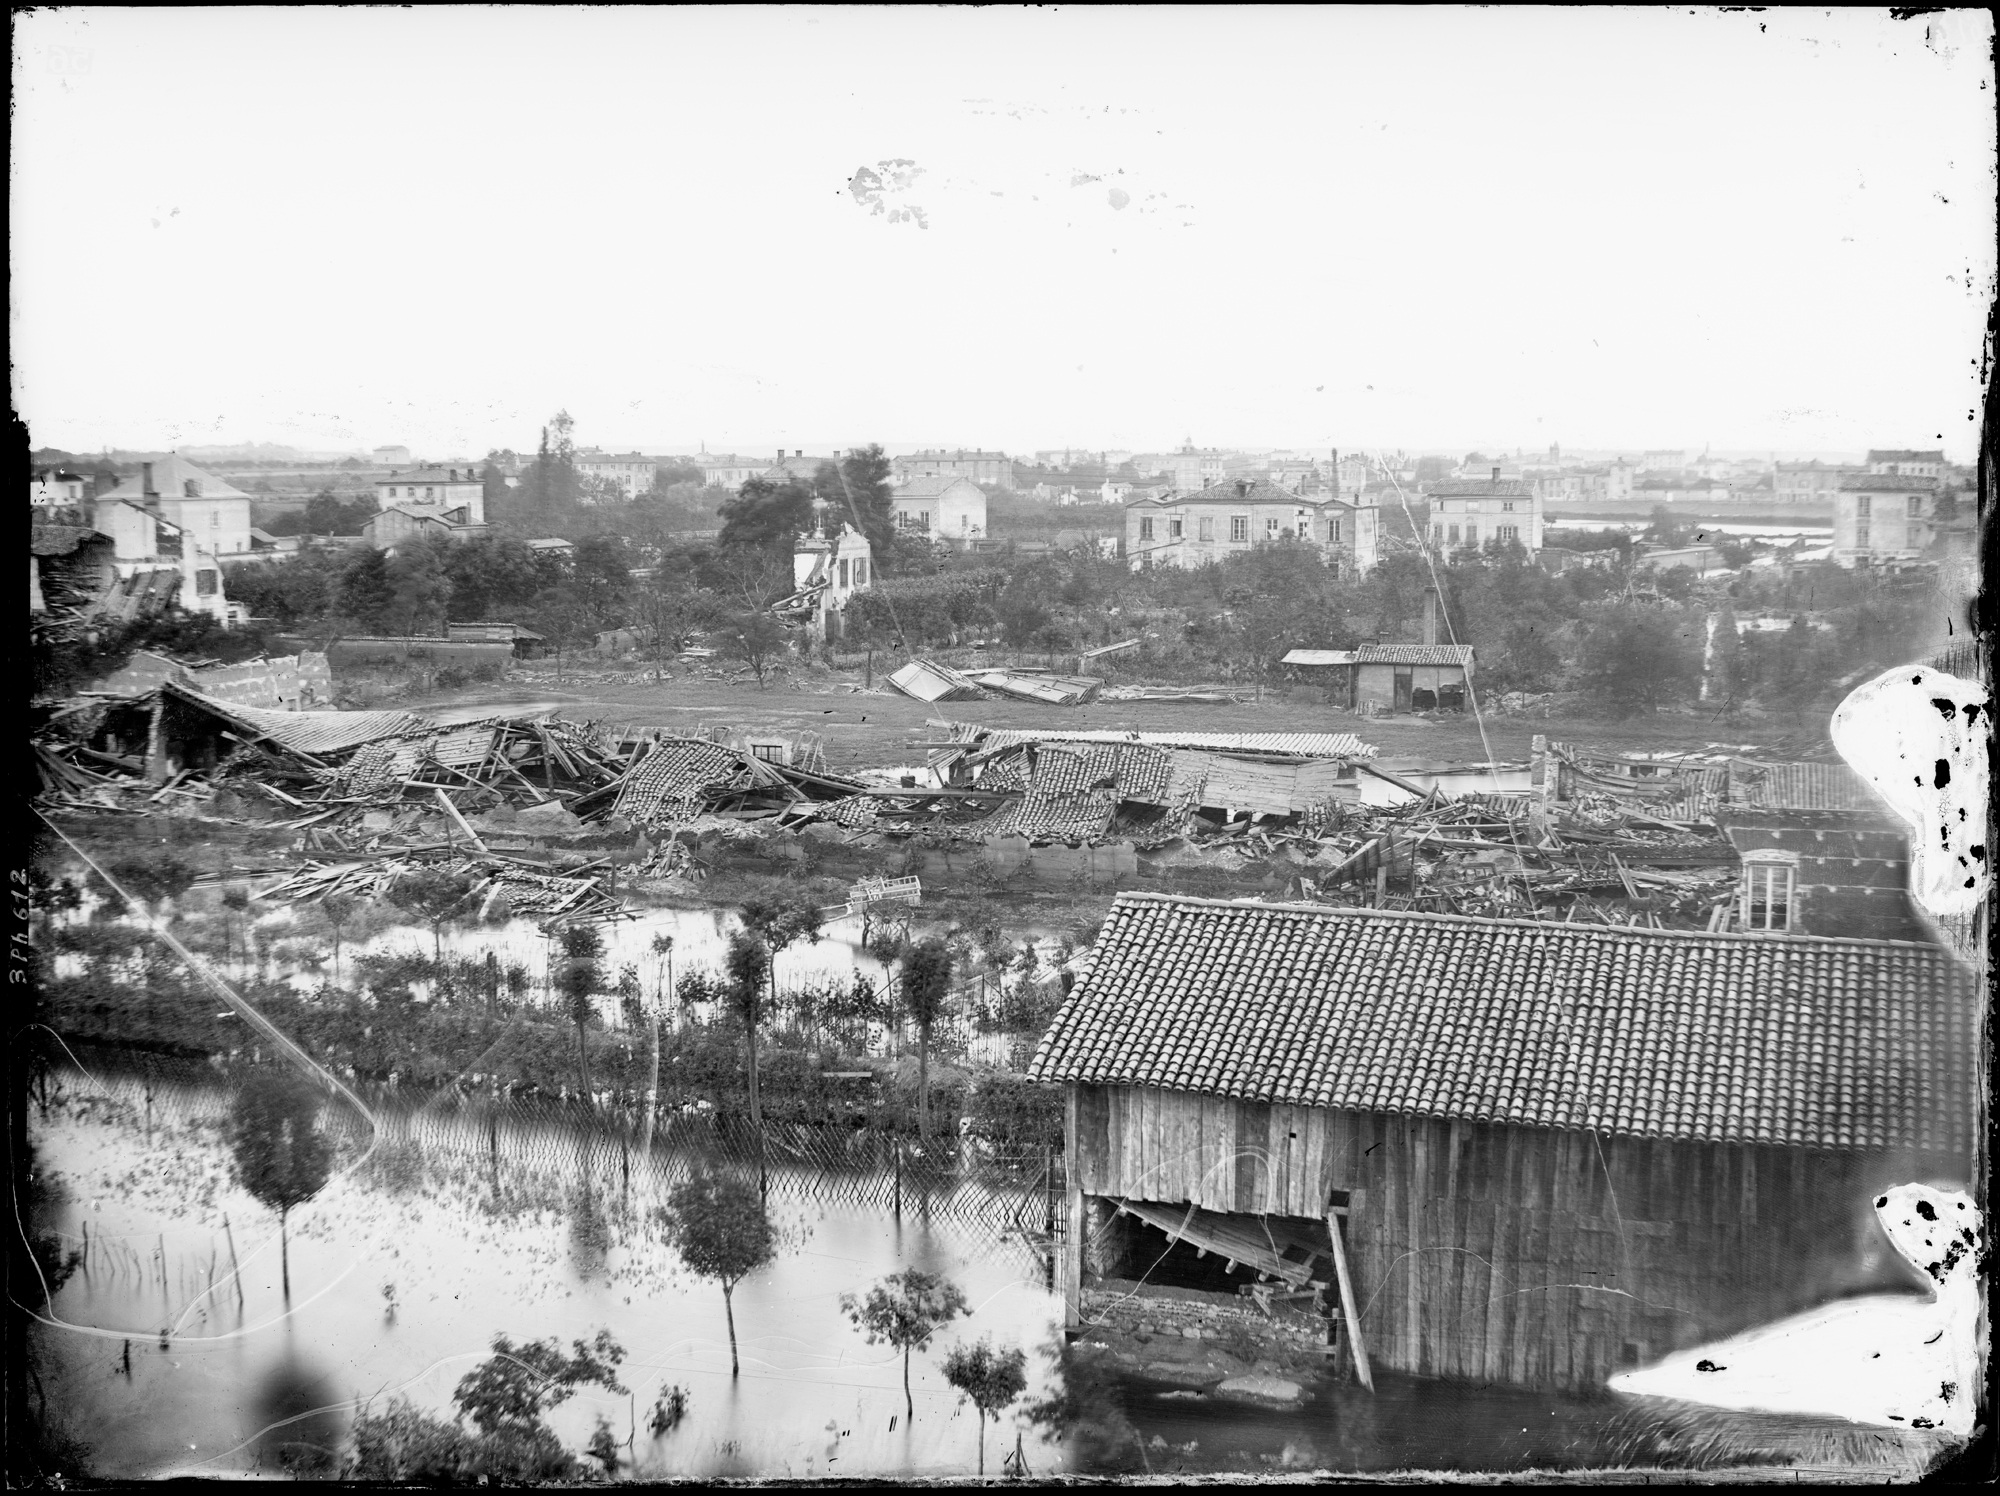 Inondation de Lyon en 1856, chemin du Sacré-Cœur: photo négative NB sur plaque de verre par Louis Froissart (06/06/1856, cote : 3PH/612)